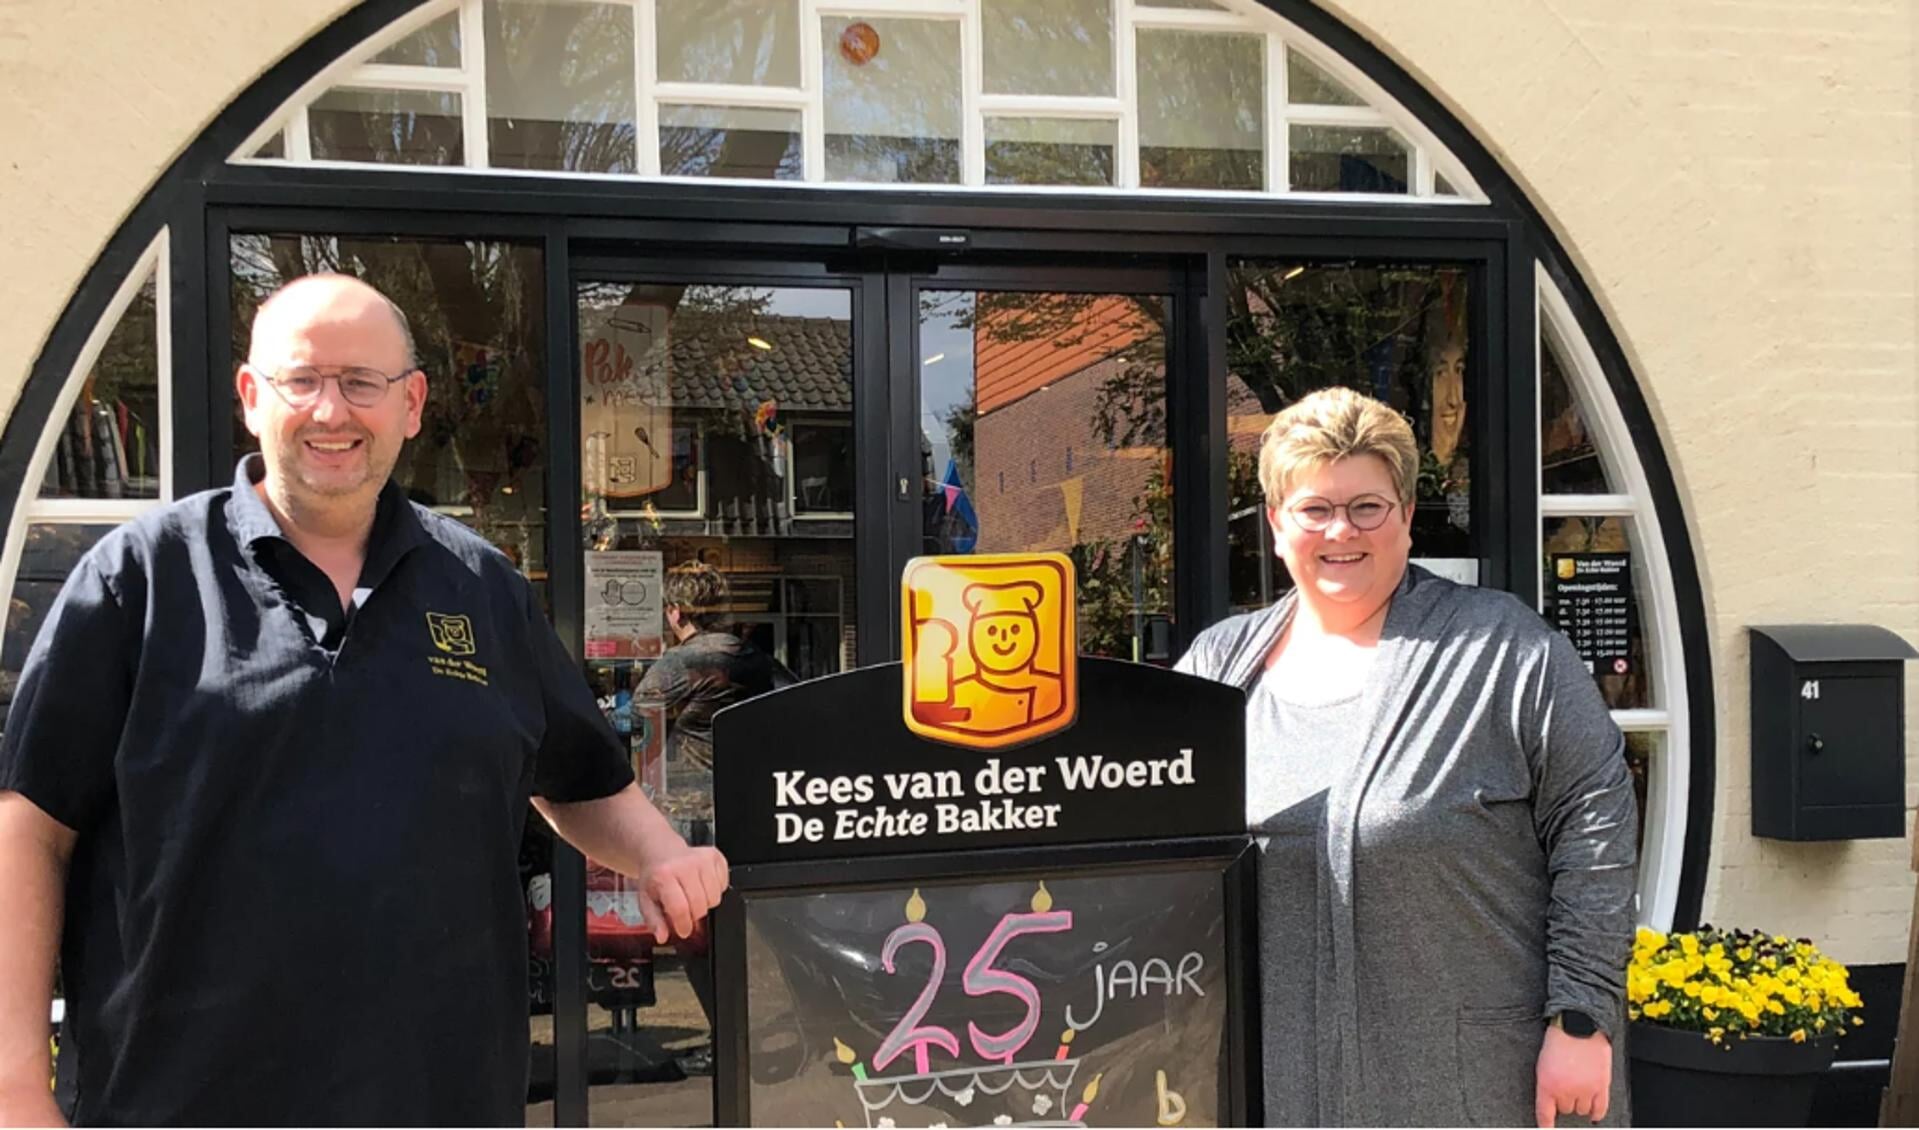 Het echtpaar Van der Woerd tijdens het 25-jarig bestaan van de bakkerij, april vorig jaar.